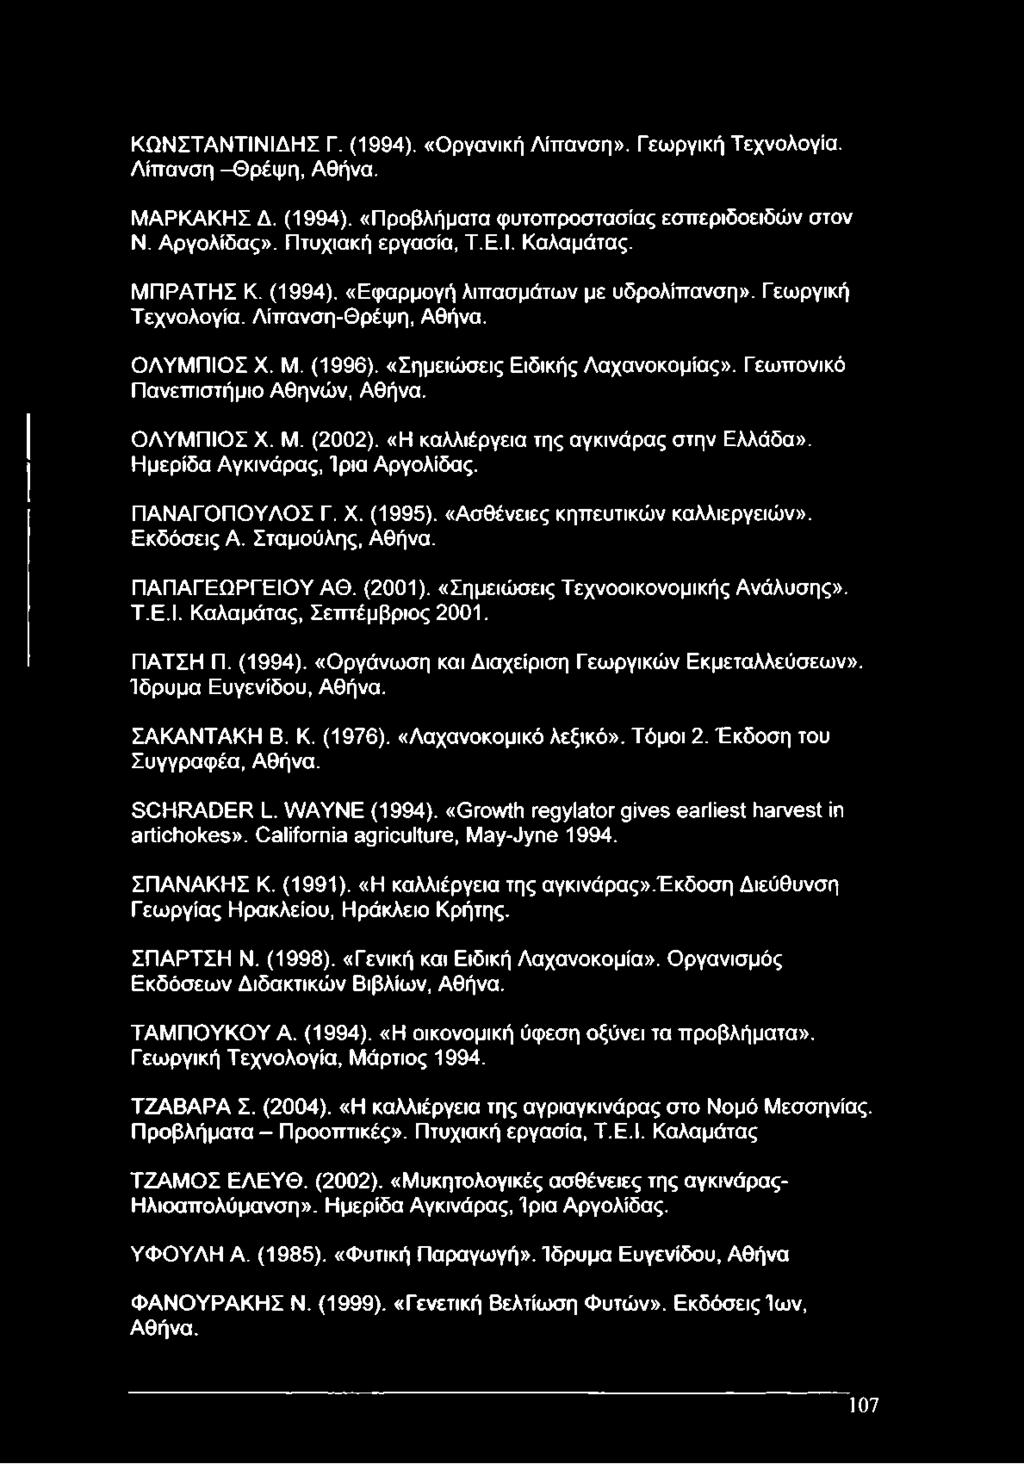 ΟΛΥΜΠΙΟΣ X. Μ. (2002). «Η καλλιέργεια της αγκινάρας στην Ελλάδα». Ημερίδα Αγκινάρας, Ίρια Αργολίδας. ΠΑΝΑΓΟΠΟΥΛΟΣ Γ. X. (1995). «Ασθένειες κηπευτικών καλλιεργειών». Εκδόσεις Α. Σταμούλης, Αθήνα.